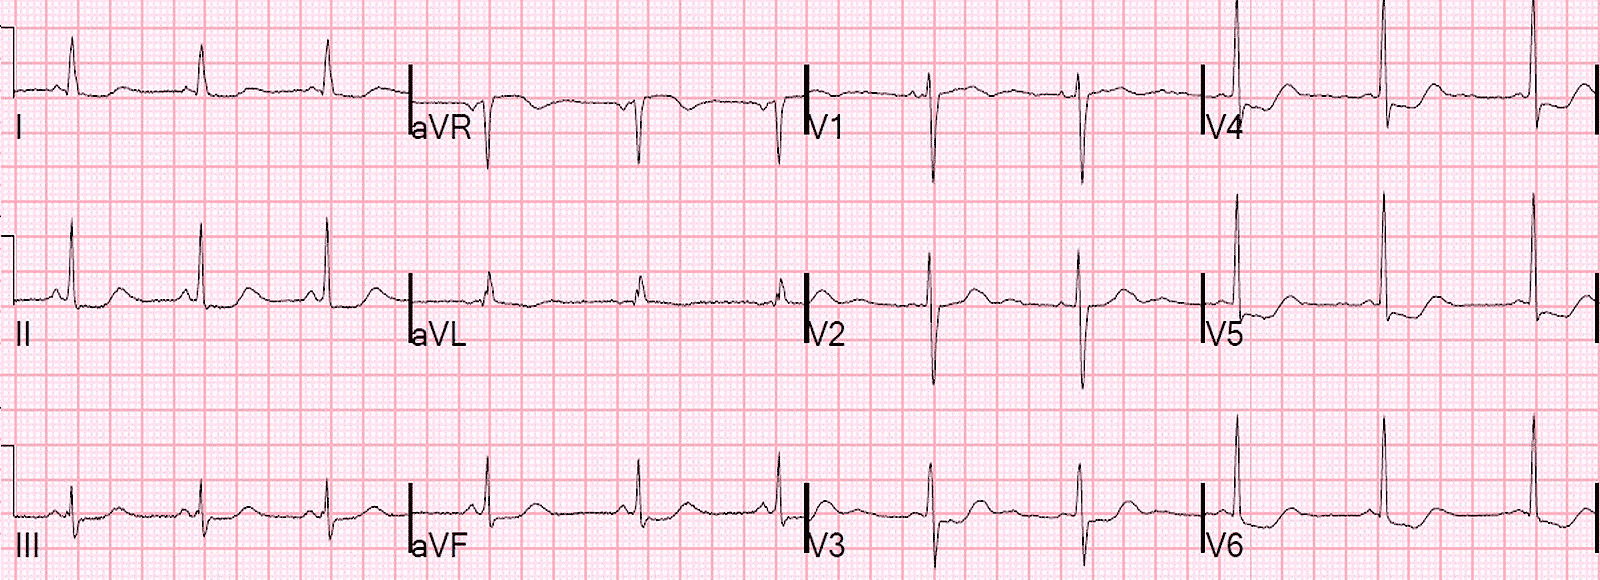 Блог по клинической электрофизиологии: Псевдоинфаркт правого желудочка